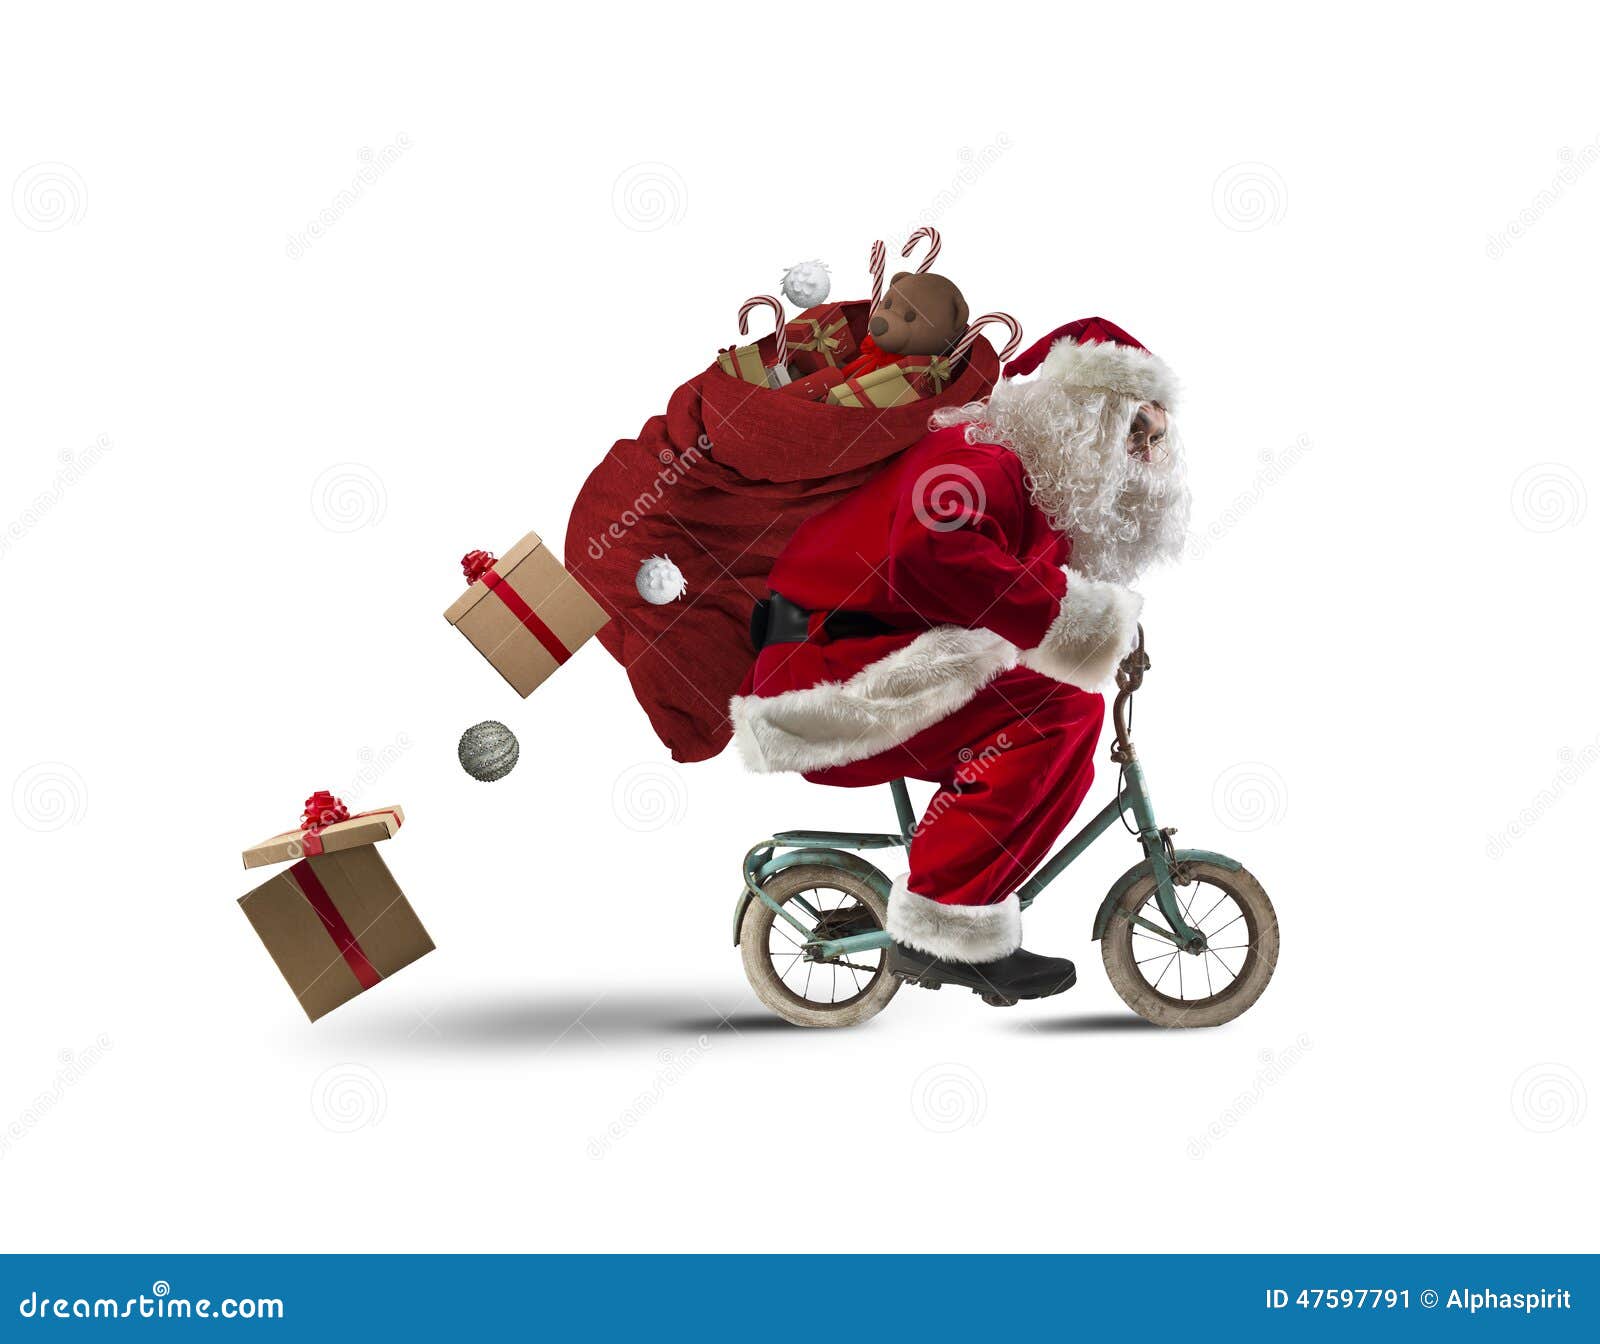 De Kerstman Op De Fiets Stock Afbeelding. Image Of December - 47597791